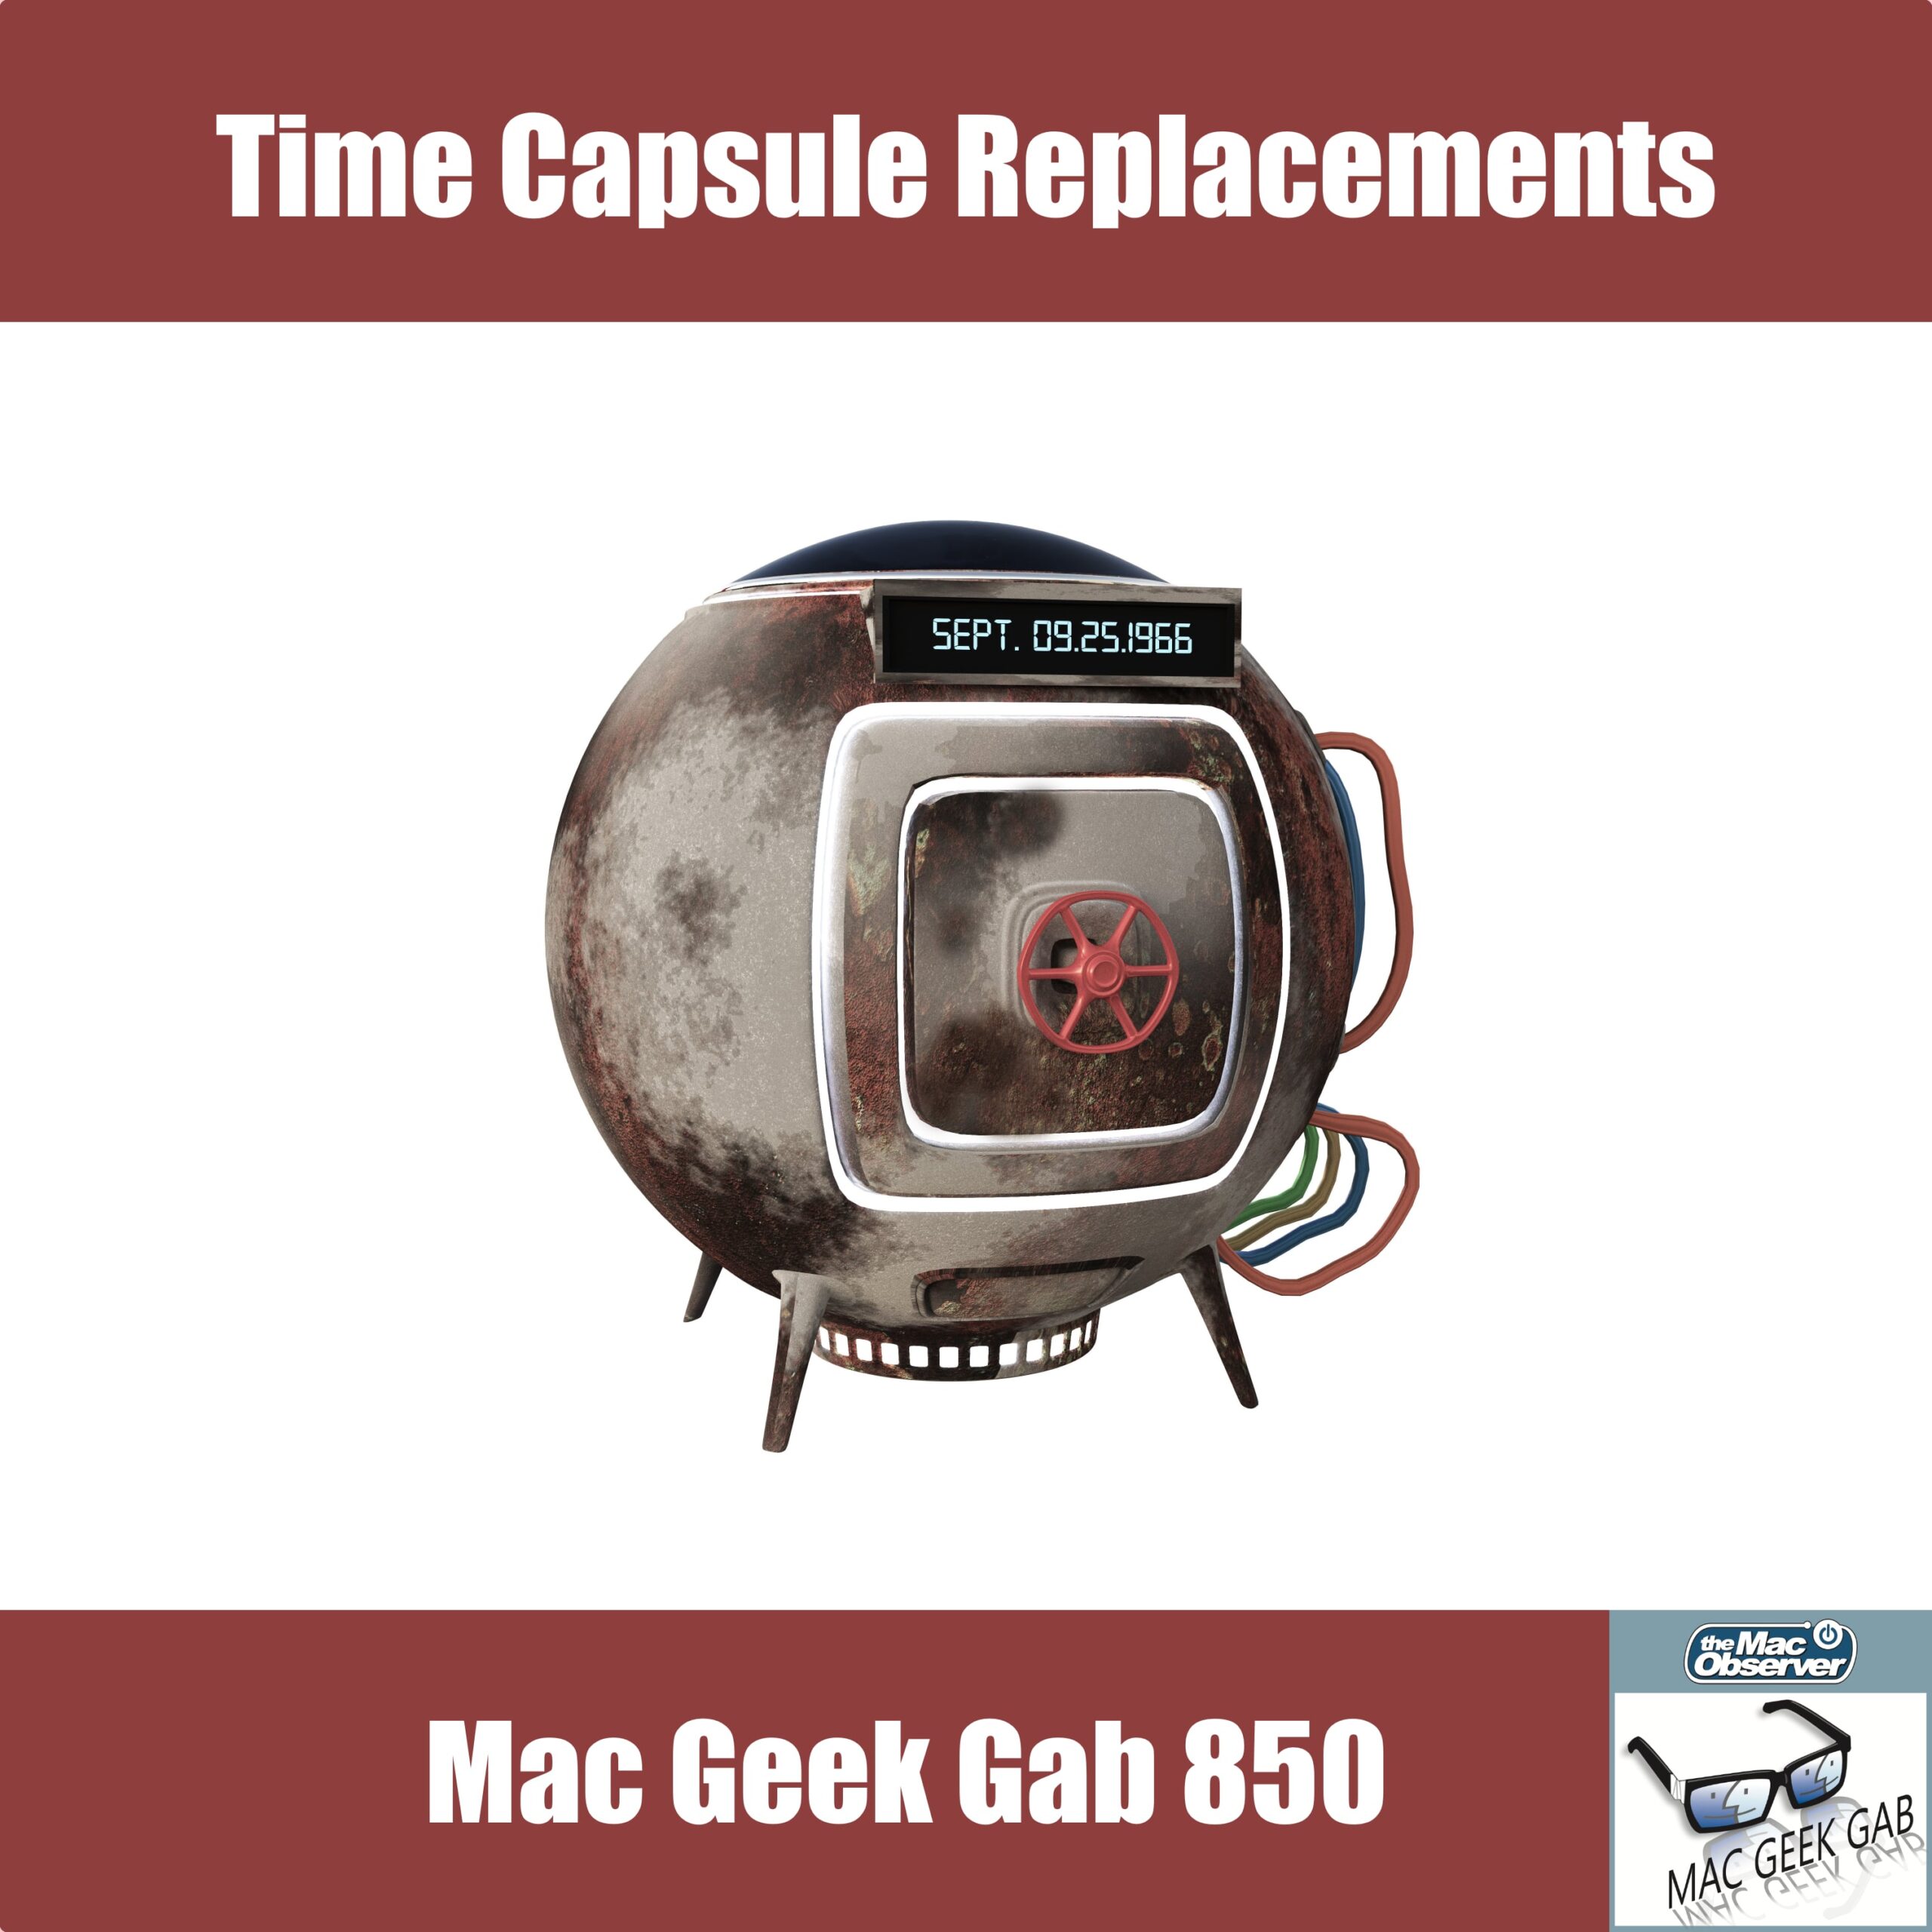 Reemplazos de cápsulas de tiempo, sugerencias rápidas y amp;  Cosas interesantes encontradas - Mac Geek Gab 850